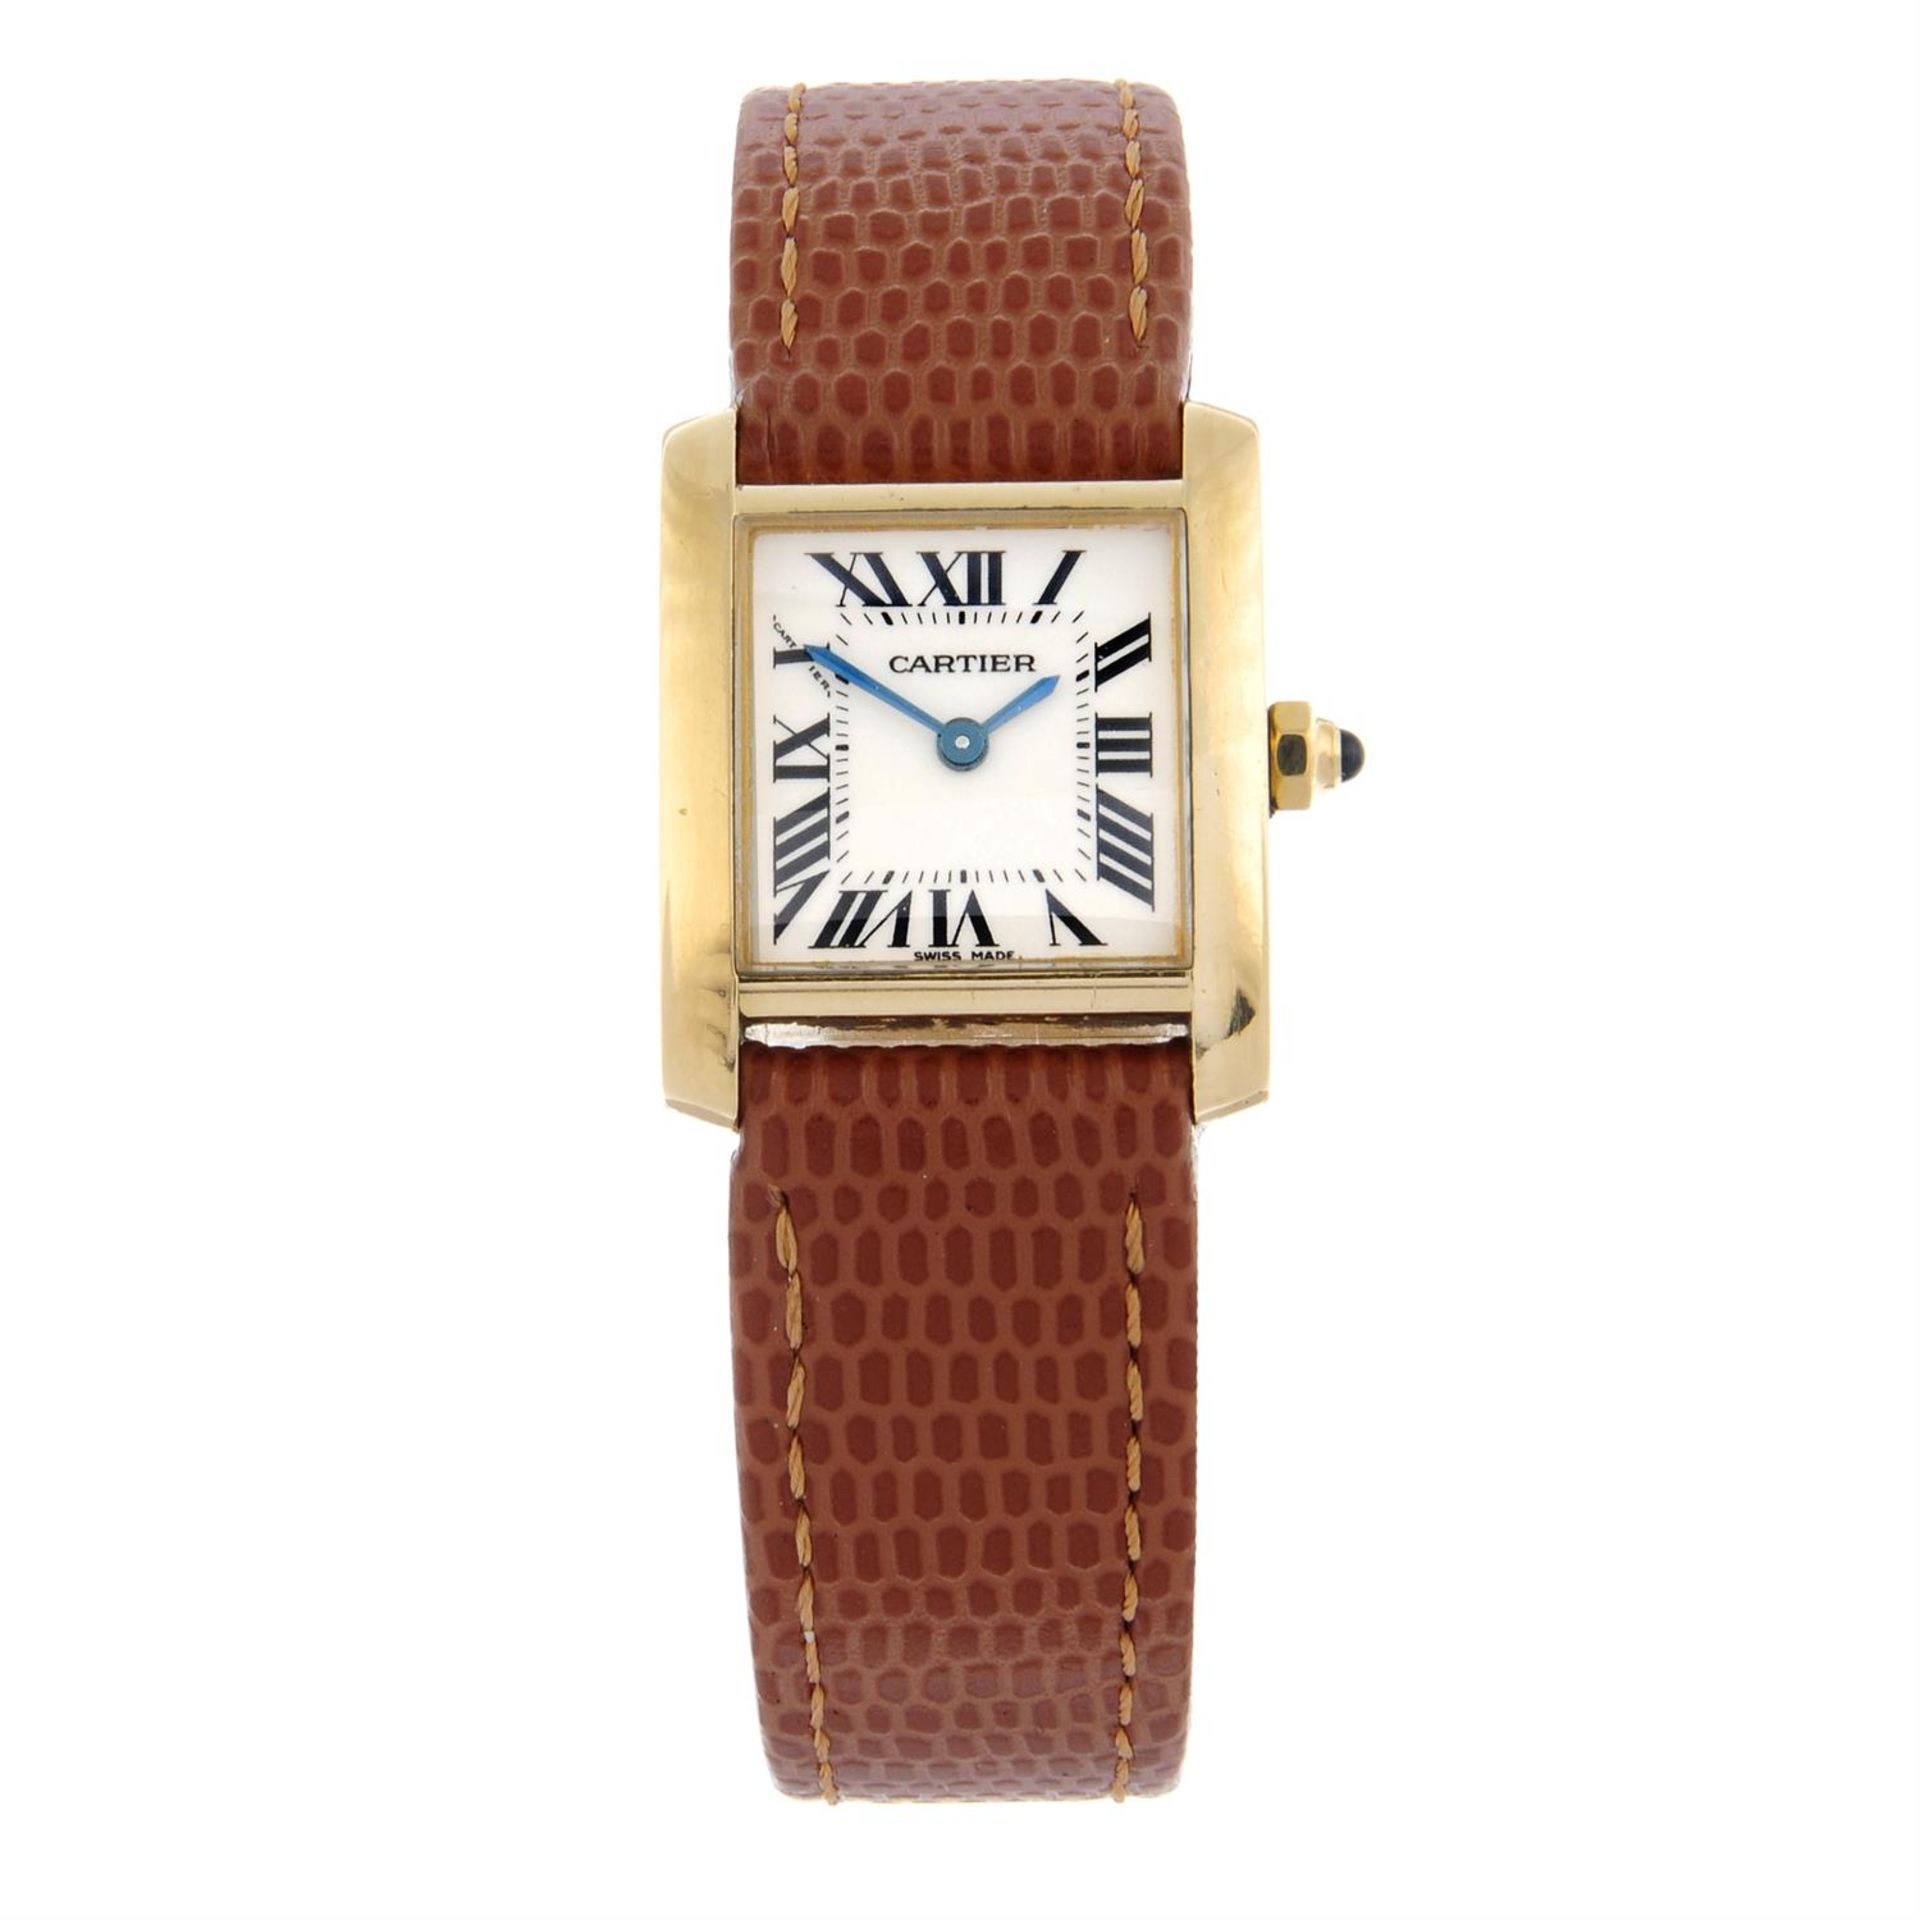 CARTIER - an 18ct gold Tank wrist watch, 20x20mm.